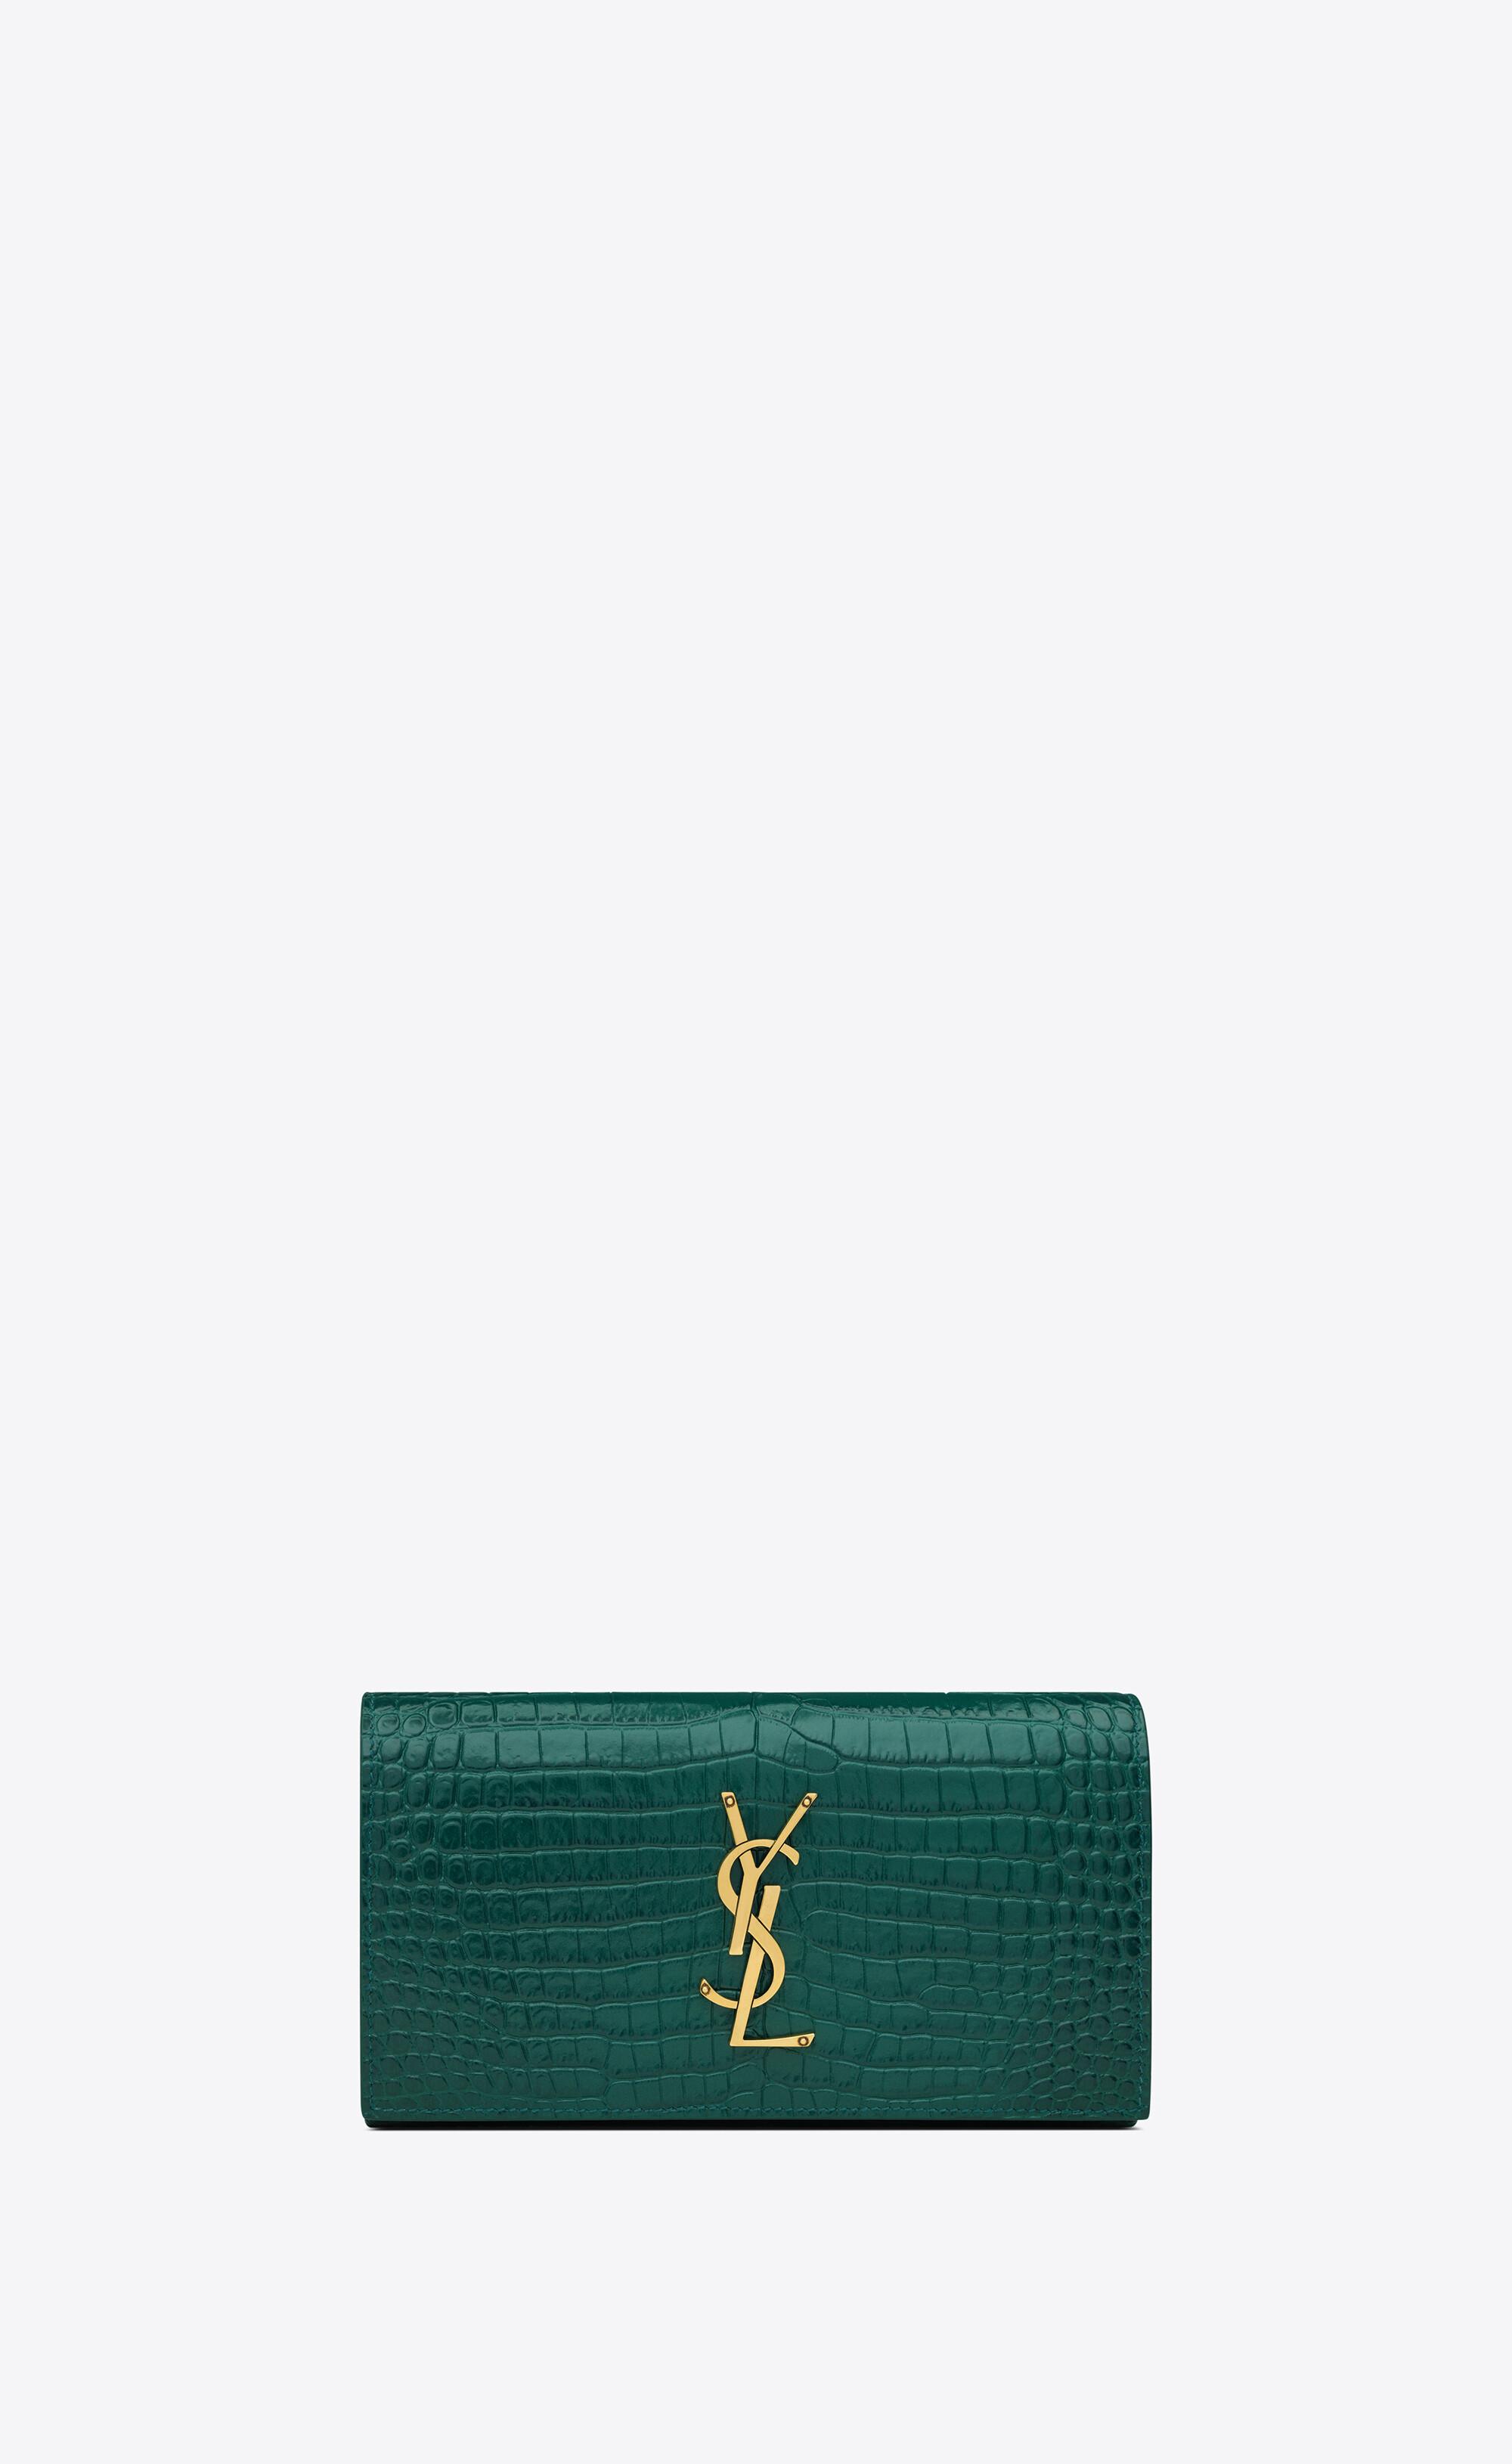 Avalon Crocodile-Embossed Handbag and Wallet Set